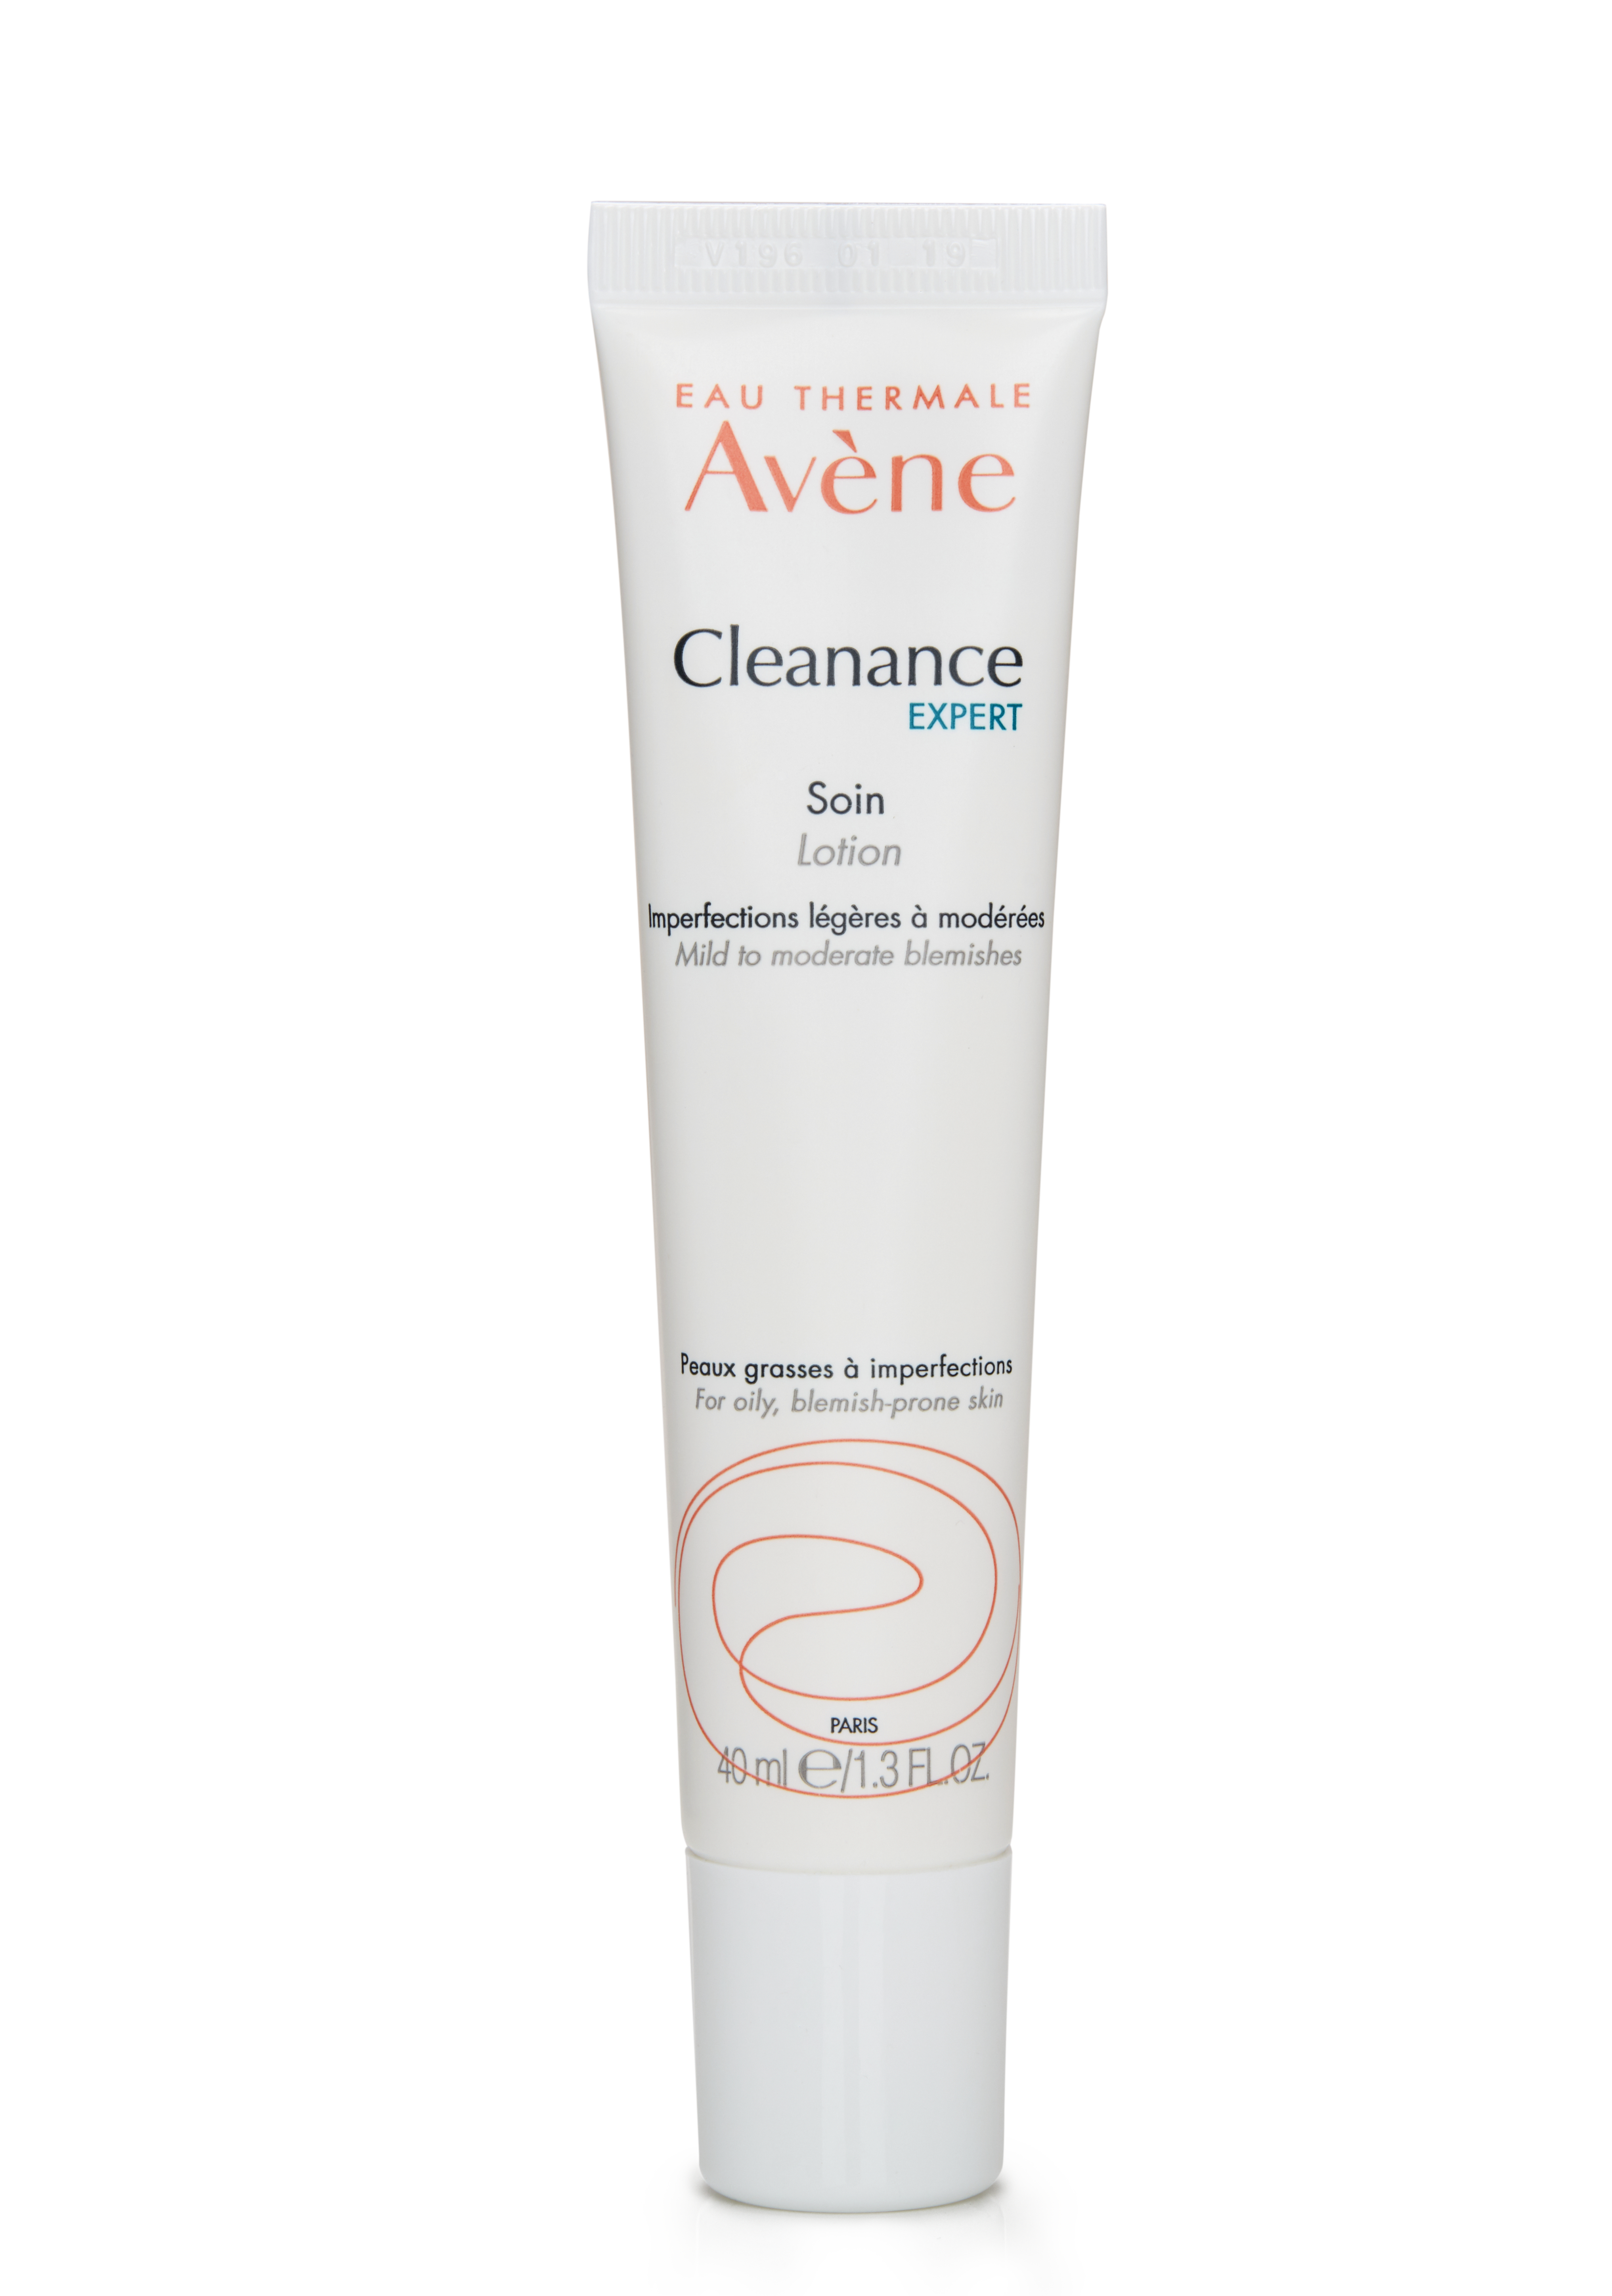 Avene Cleanance Expert review